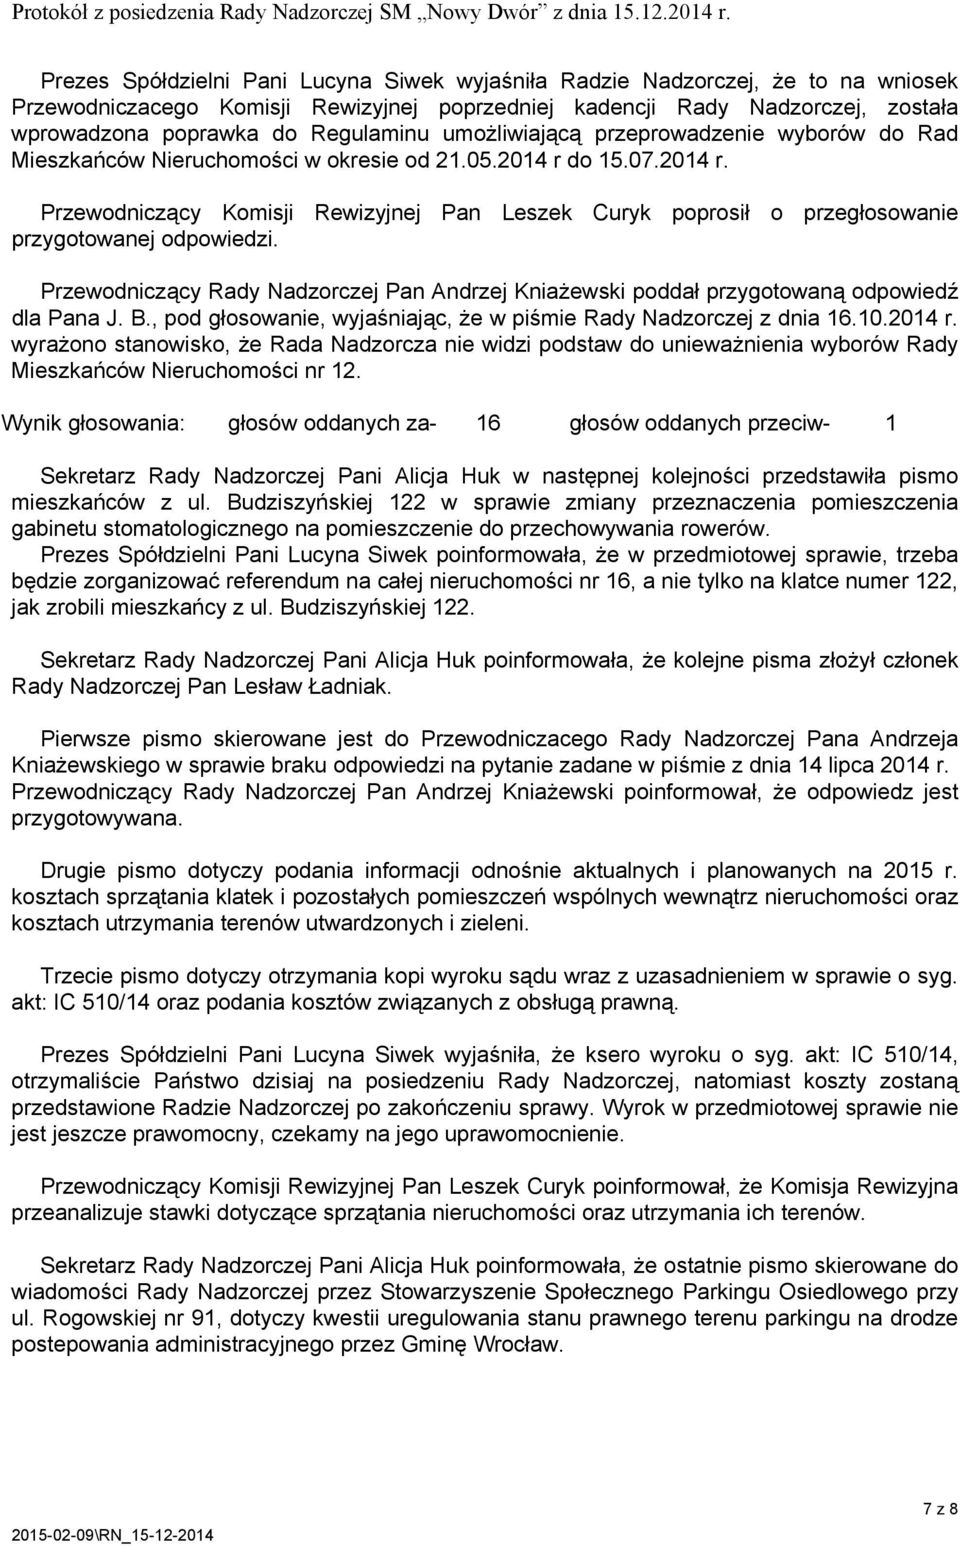 Przewodniczący Rady Nadzorczej Pan Andrzej Kniażewski poddał przygotowaną odpowiedź dla Pana J. B., pod głosowanie, wyjaśniając, że w piśmie Rady Nadzorczej z dnia 16.10.2014 r.